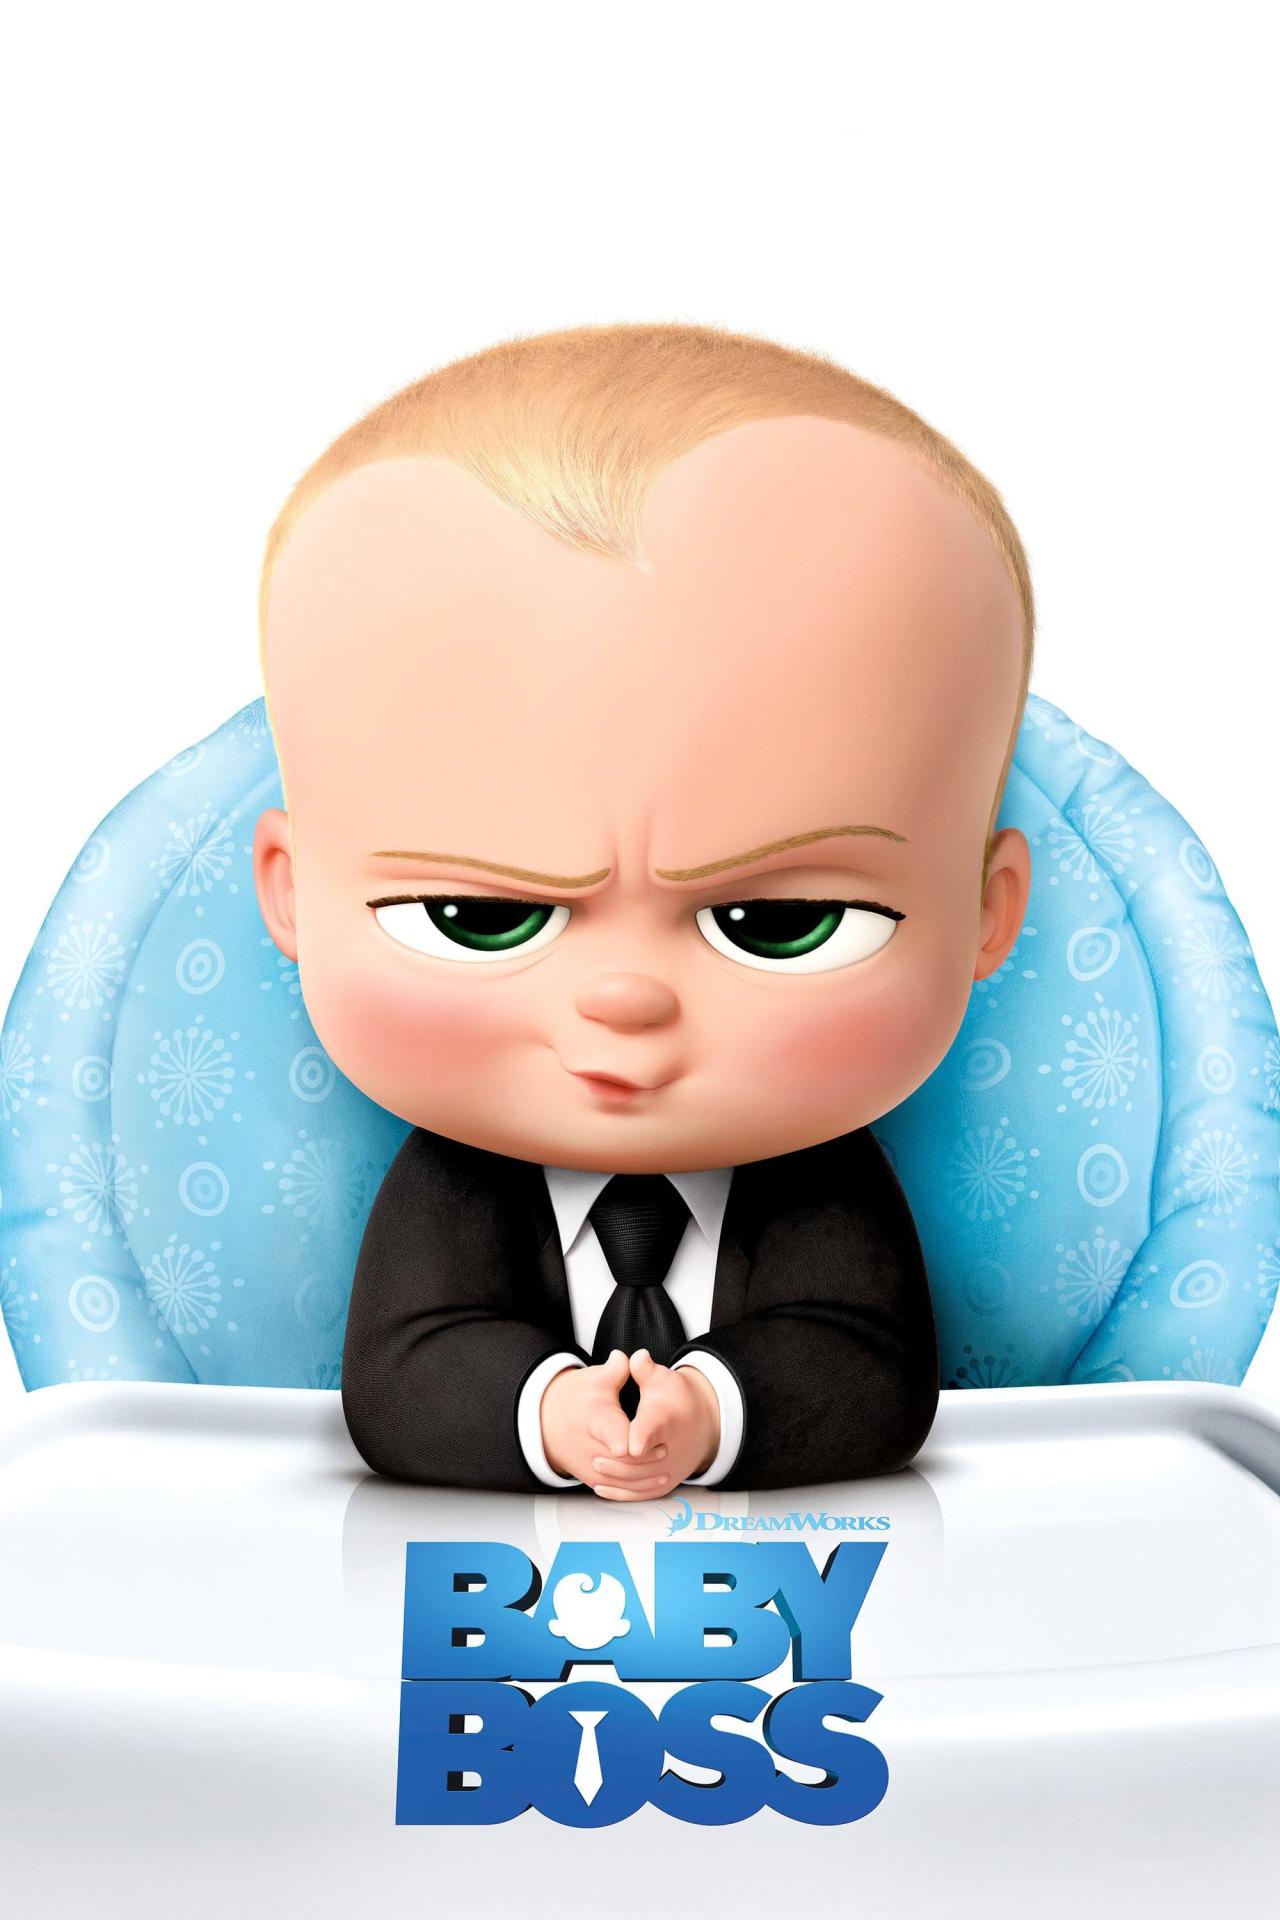 Baby Boss est-il disponible sur Netflix ou autre ?